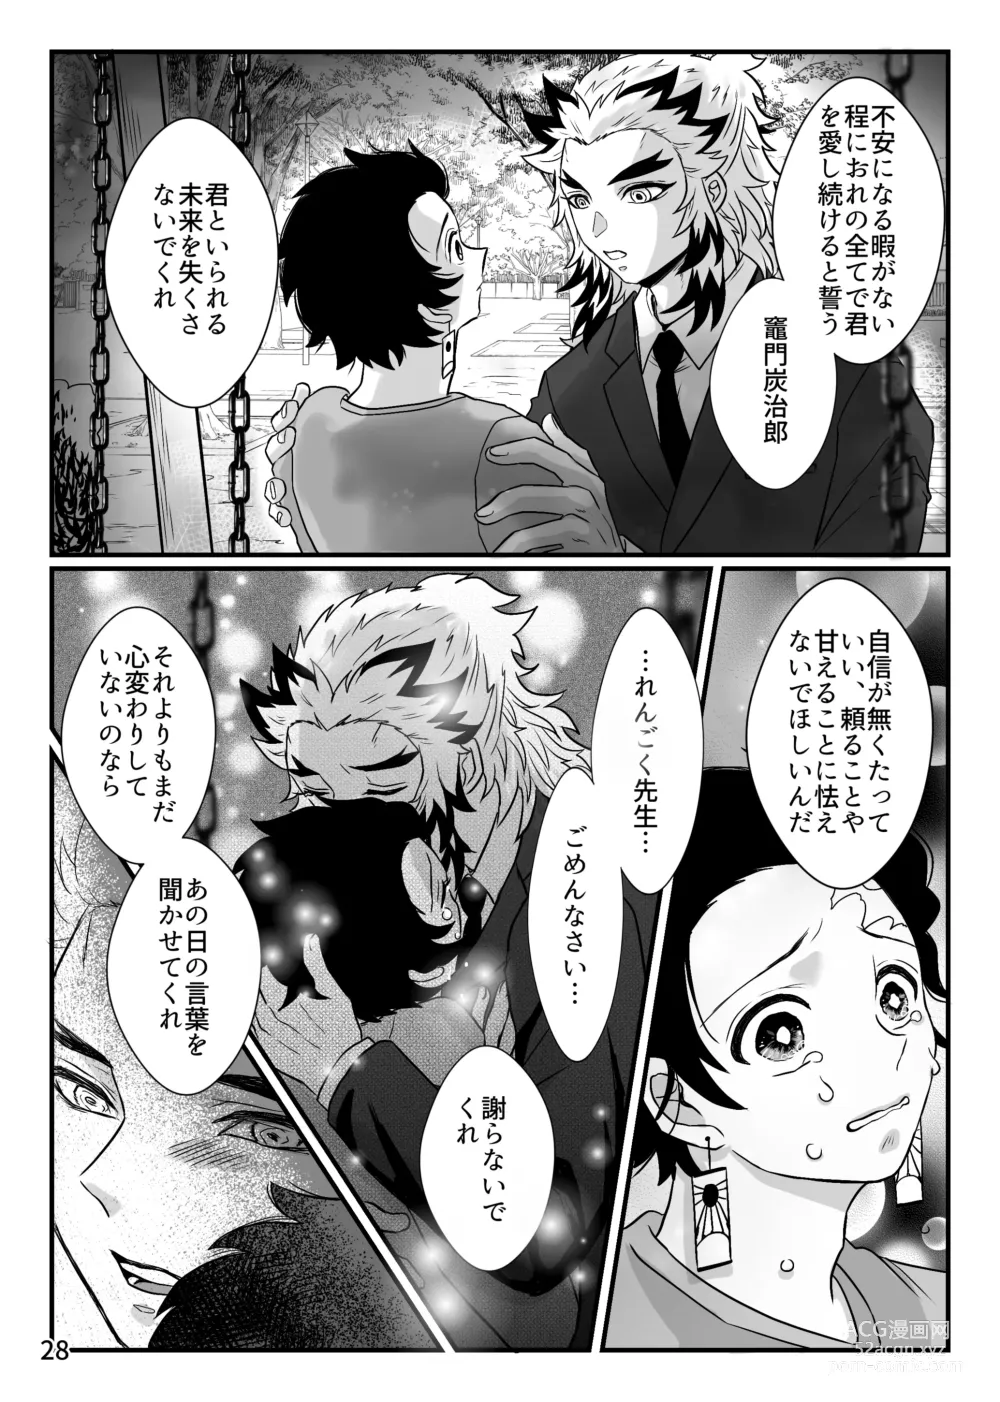 Page 28 of doujinshi Kono Gekijou o Shirazu ni